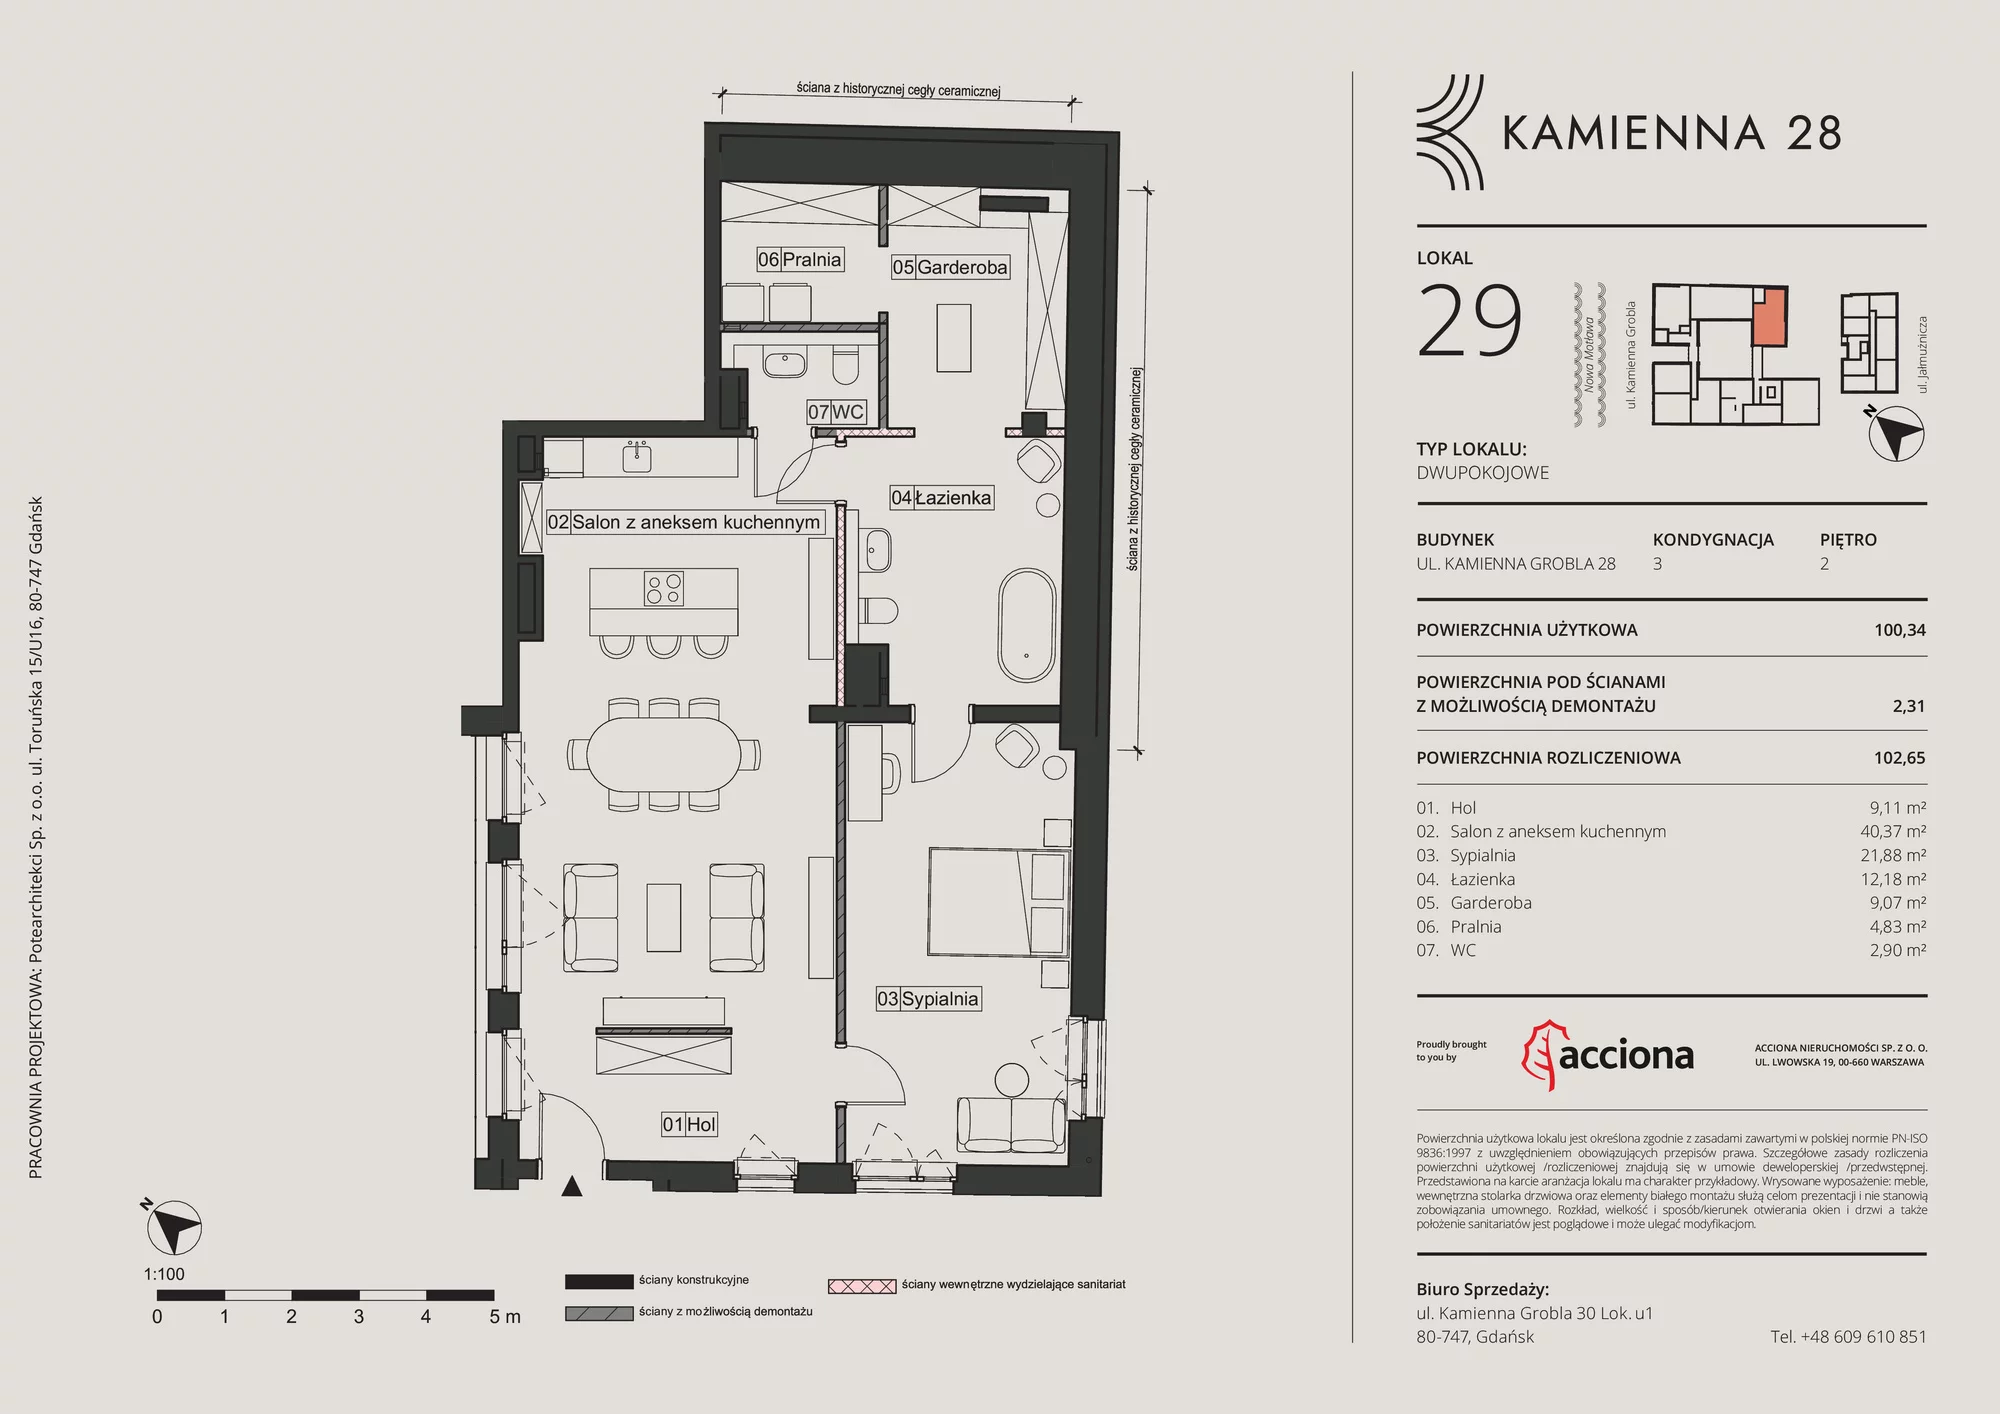 Mieszkanie 102,65 m², piętro 2, oferta nr 28.29, Kamienna 28, Gdańsk, Śródmieście, Dolne Miasto, ul. Kamienna Grobla 28/29